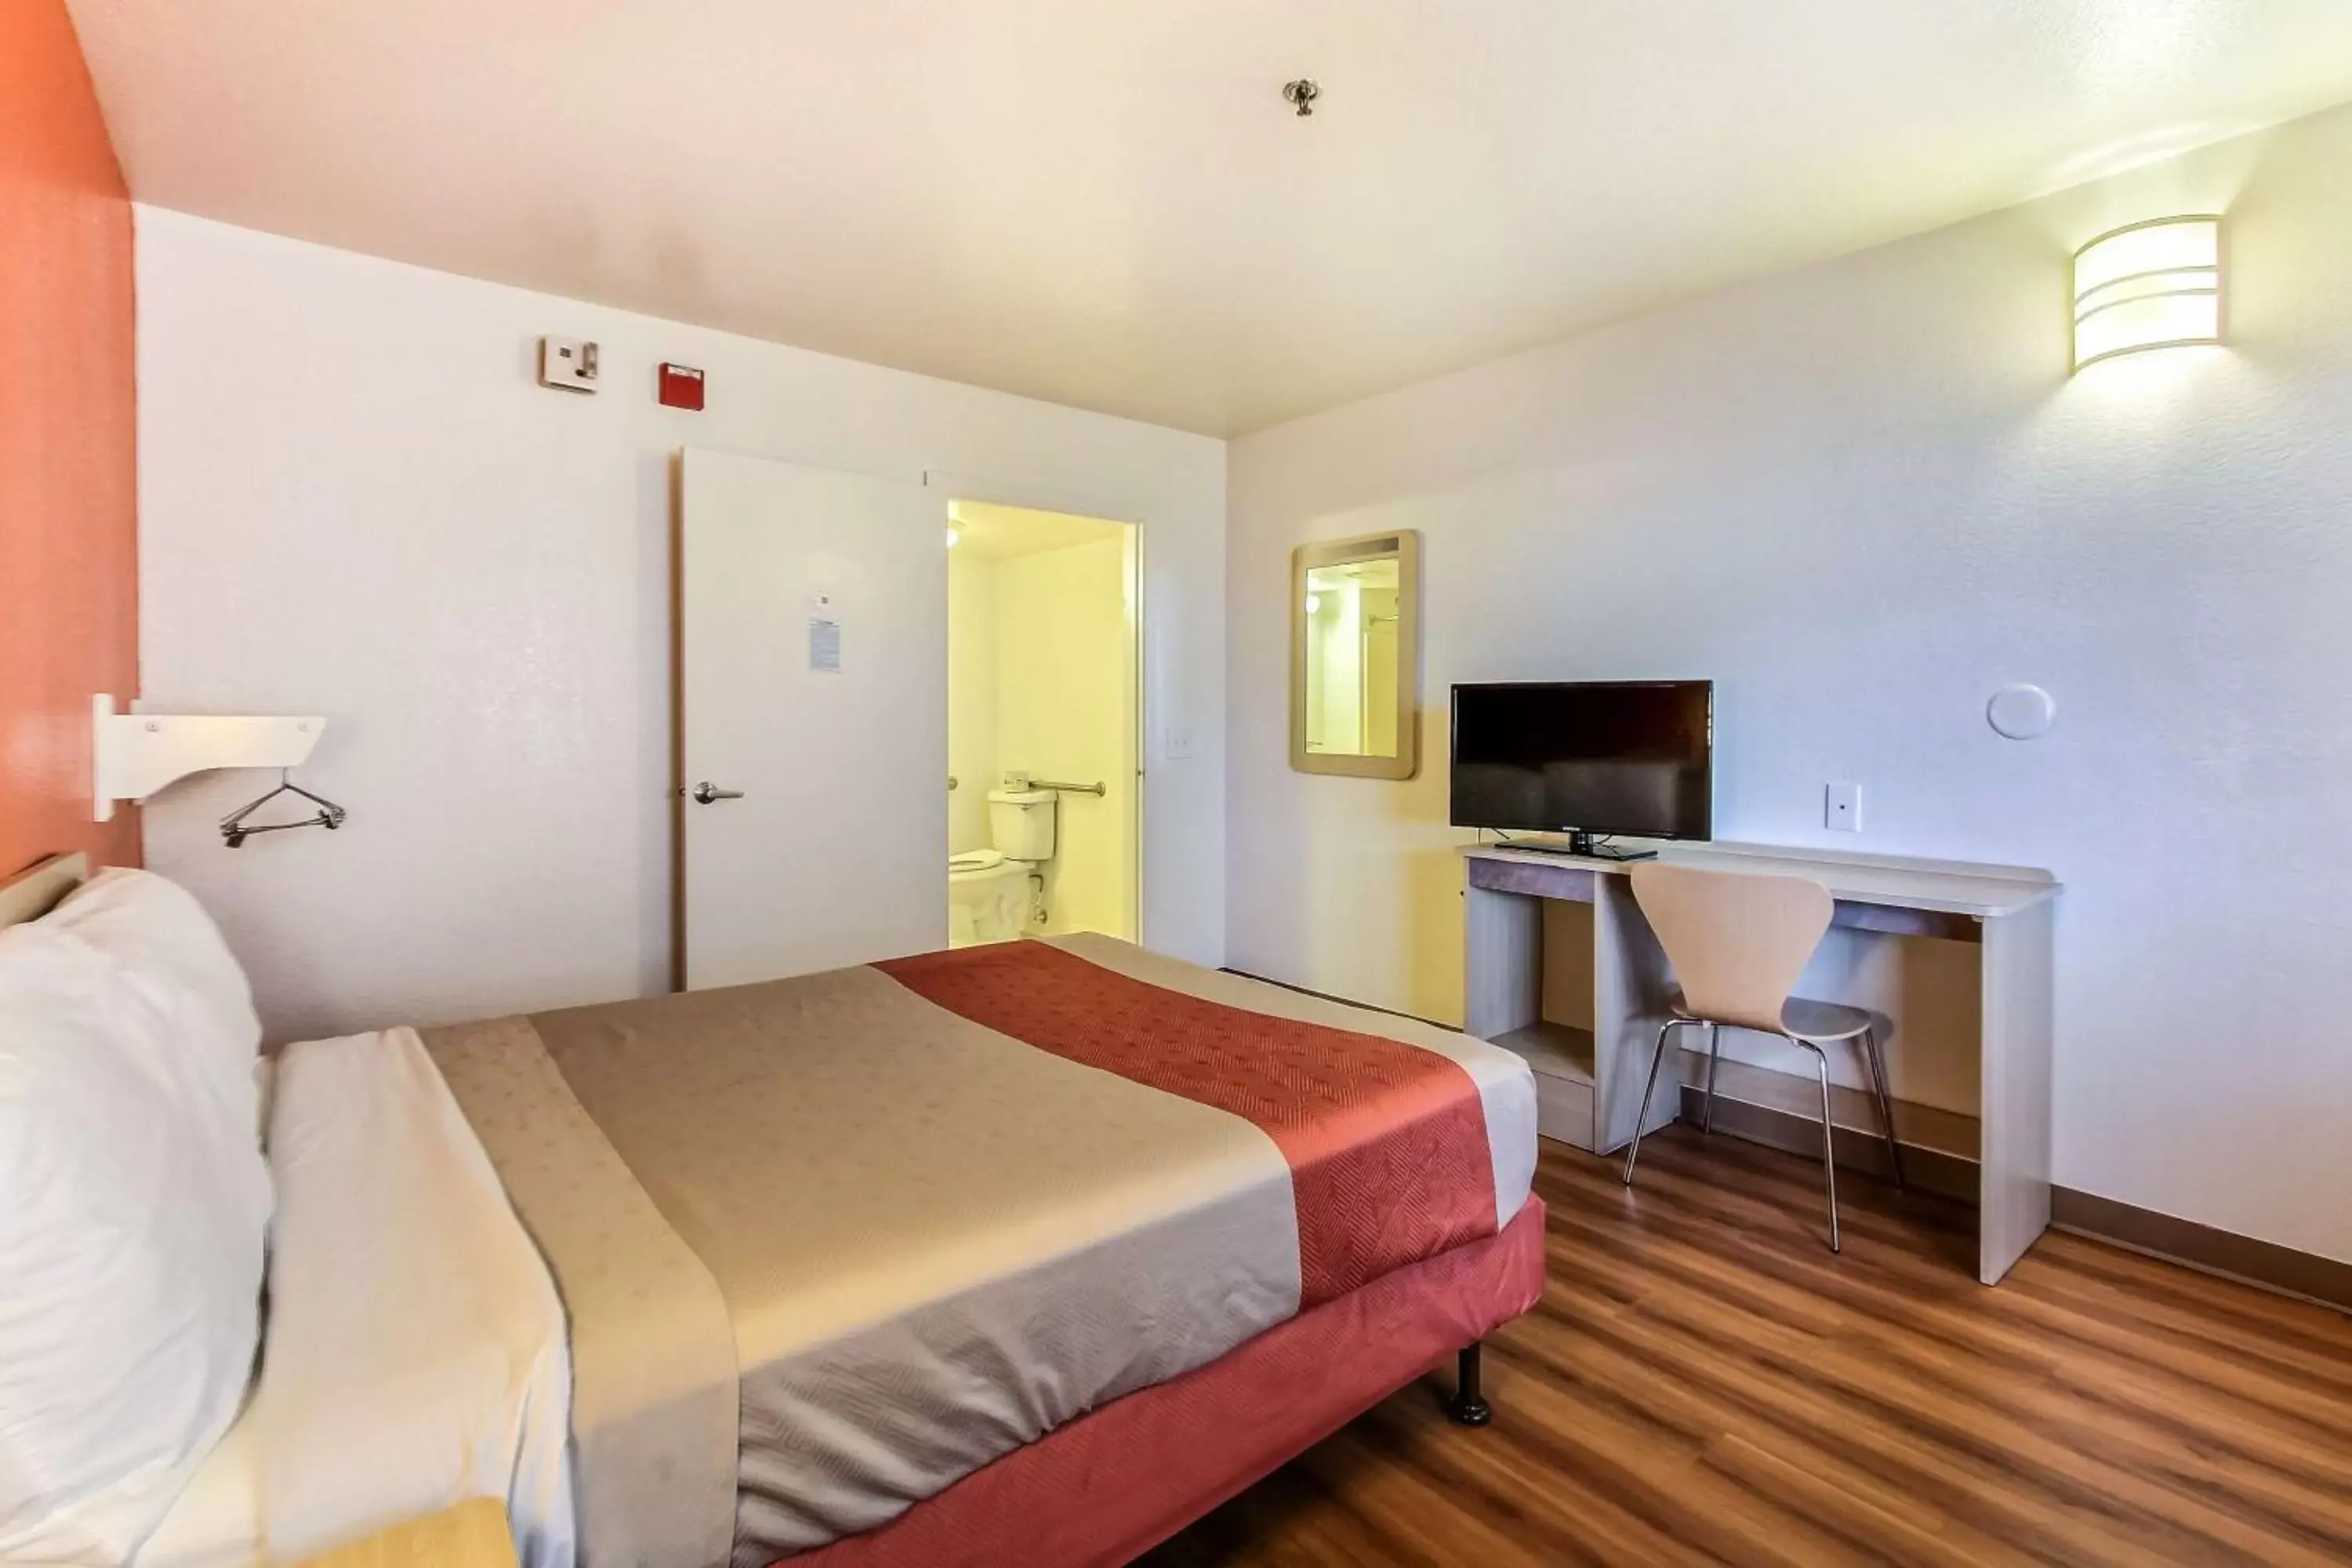 Toilet, Room Photo in Motel 6-Salinas, CA - North Monterey Area